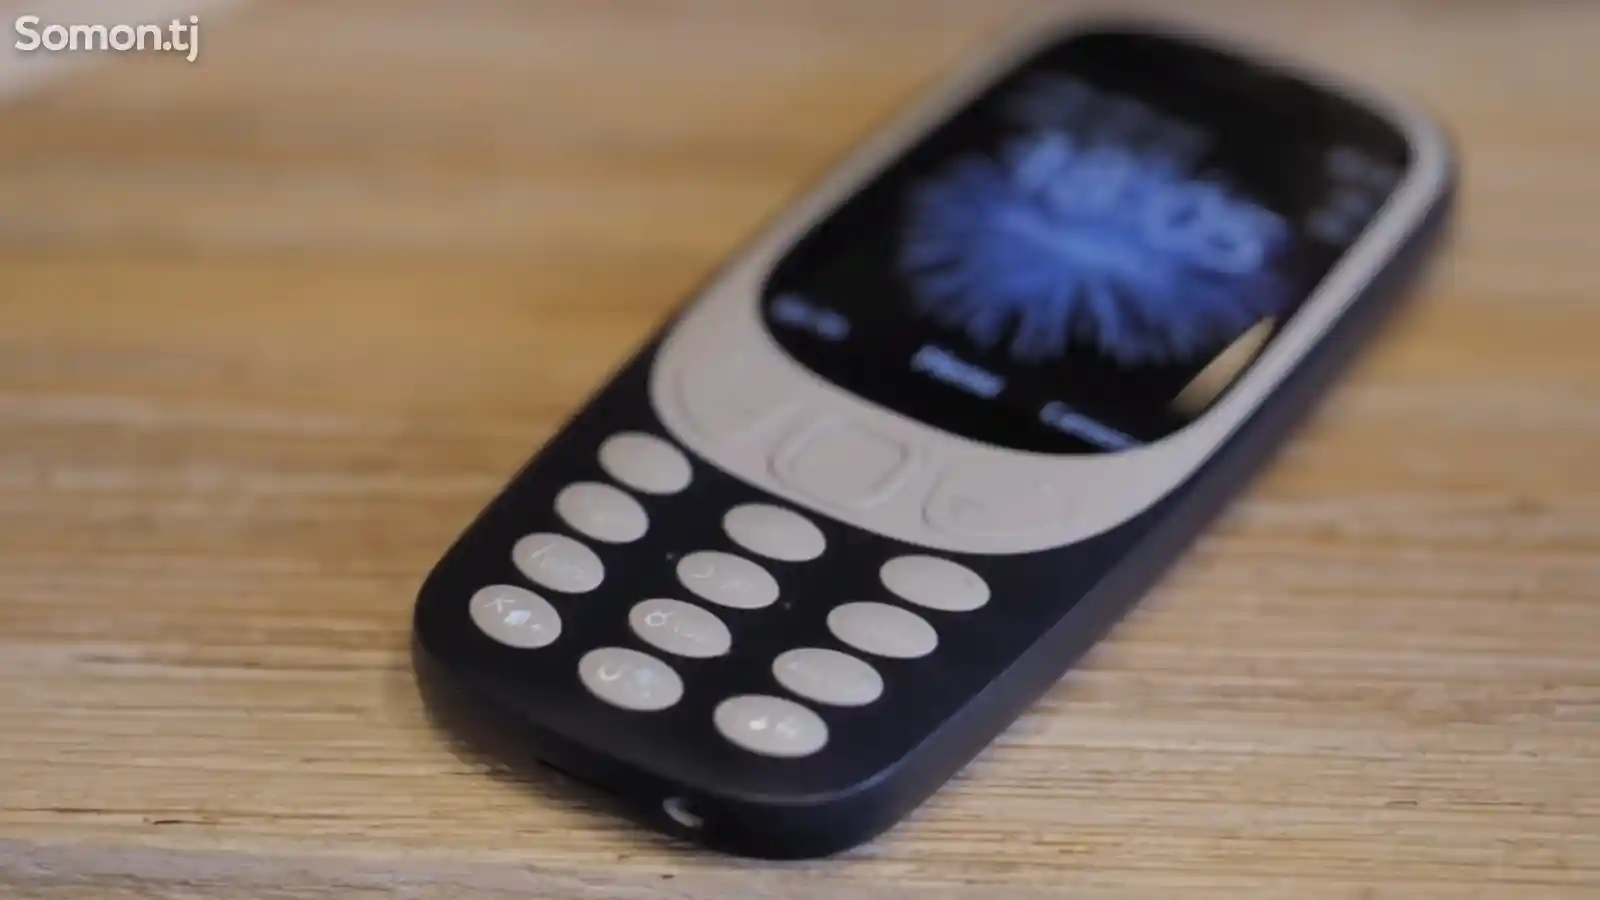 Nokia 3310-6